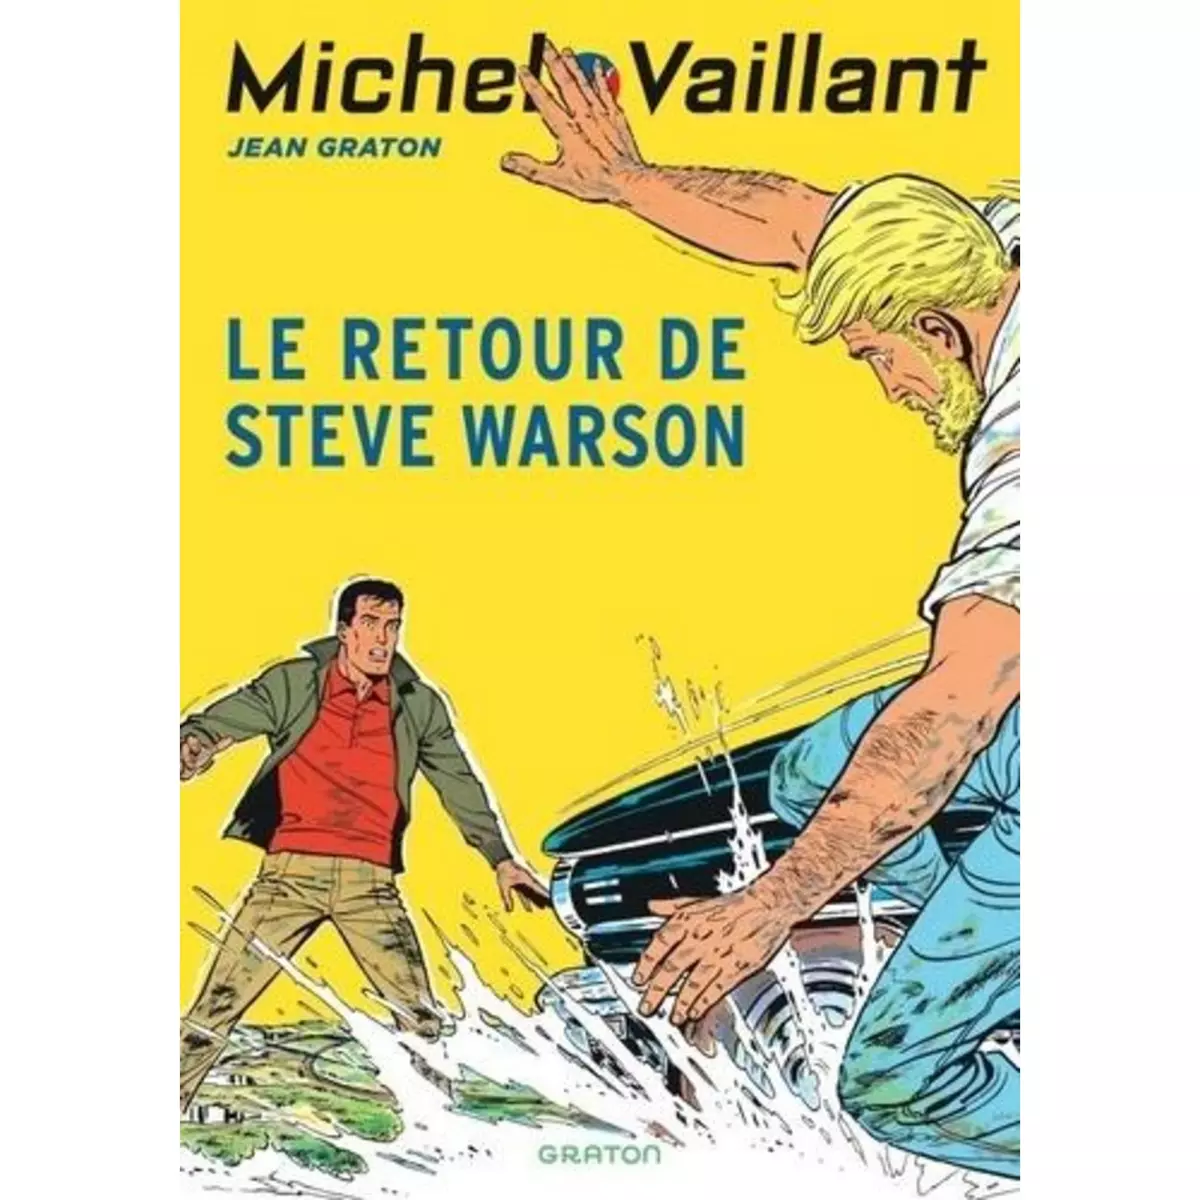  MICHEL VAILLANT - TOME 9 - LE RETOUR DE STEVE WARSON / NOUVELLE EDITION (EDITION DEFINITIVE), Graton Jean